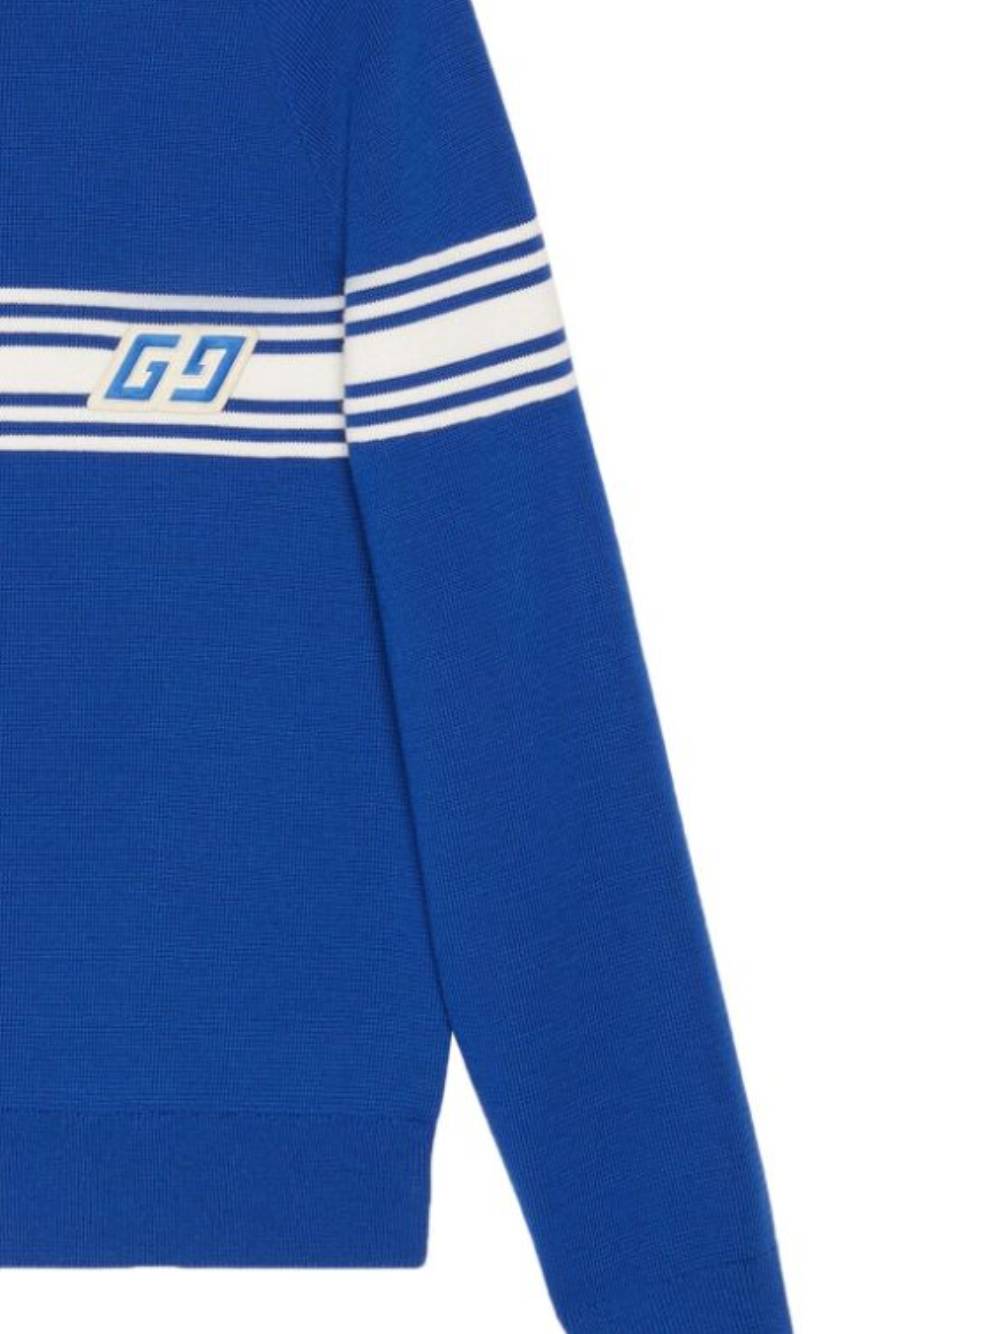 Gucci 763398 Man BLUE/IVORY/MIX Sweaters - Zuklat